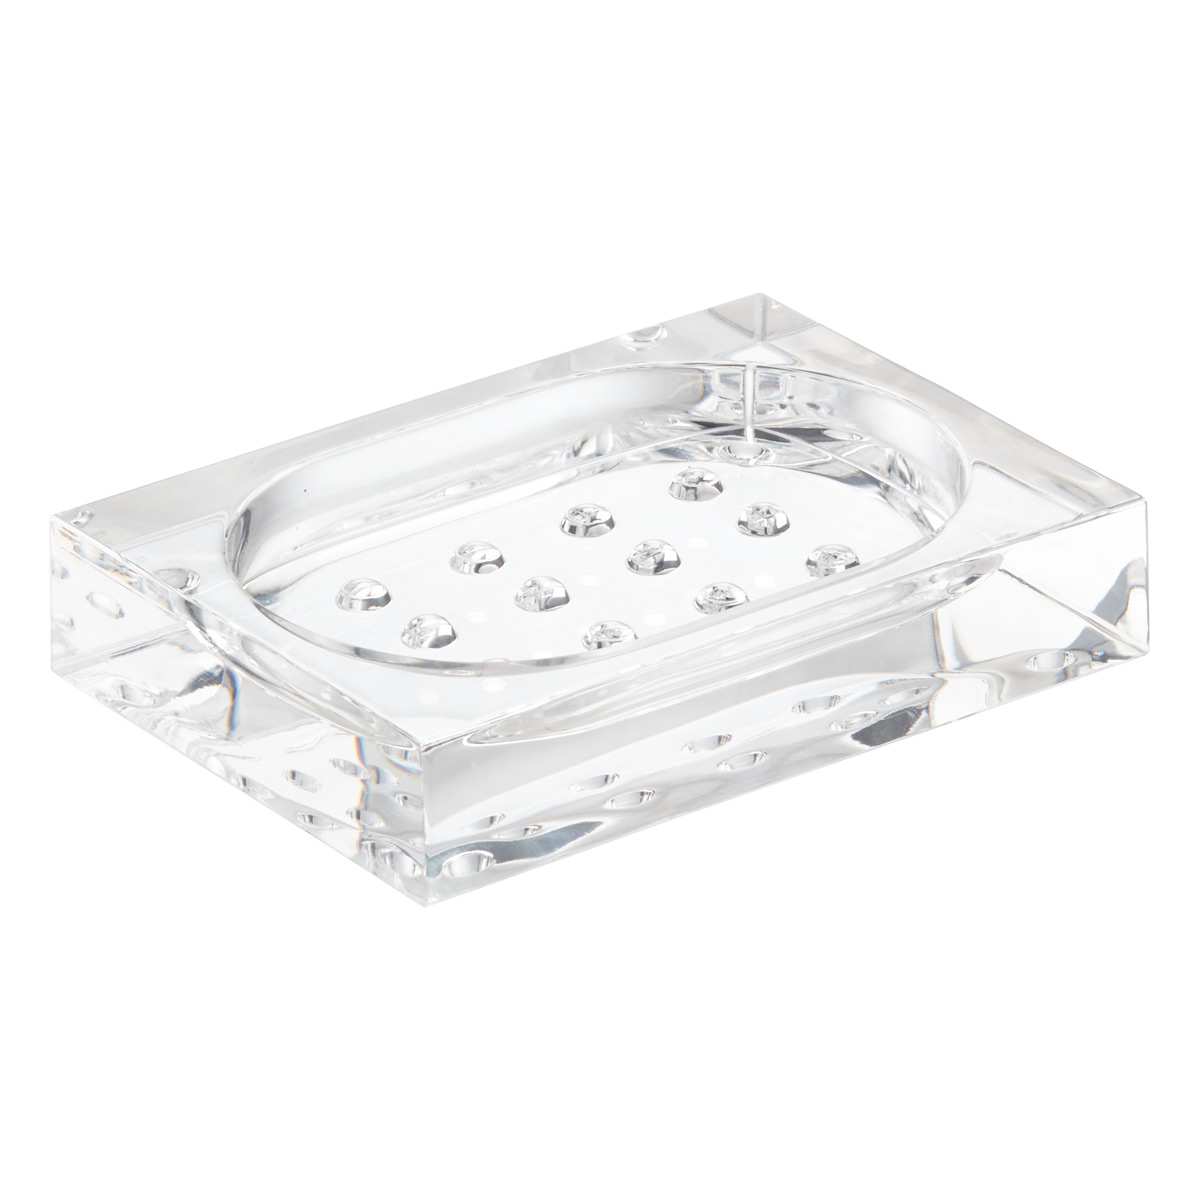 Luxury 4pcs sets Acrylic Soap Dish holder Rinse Black Set Diamond studded set 